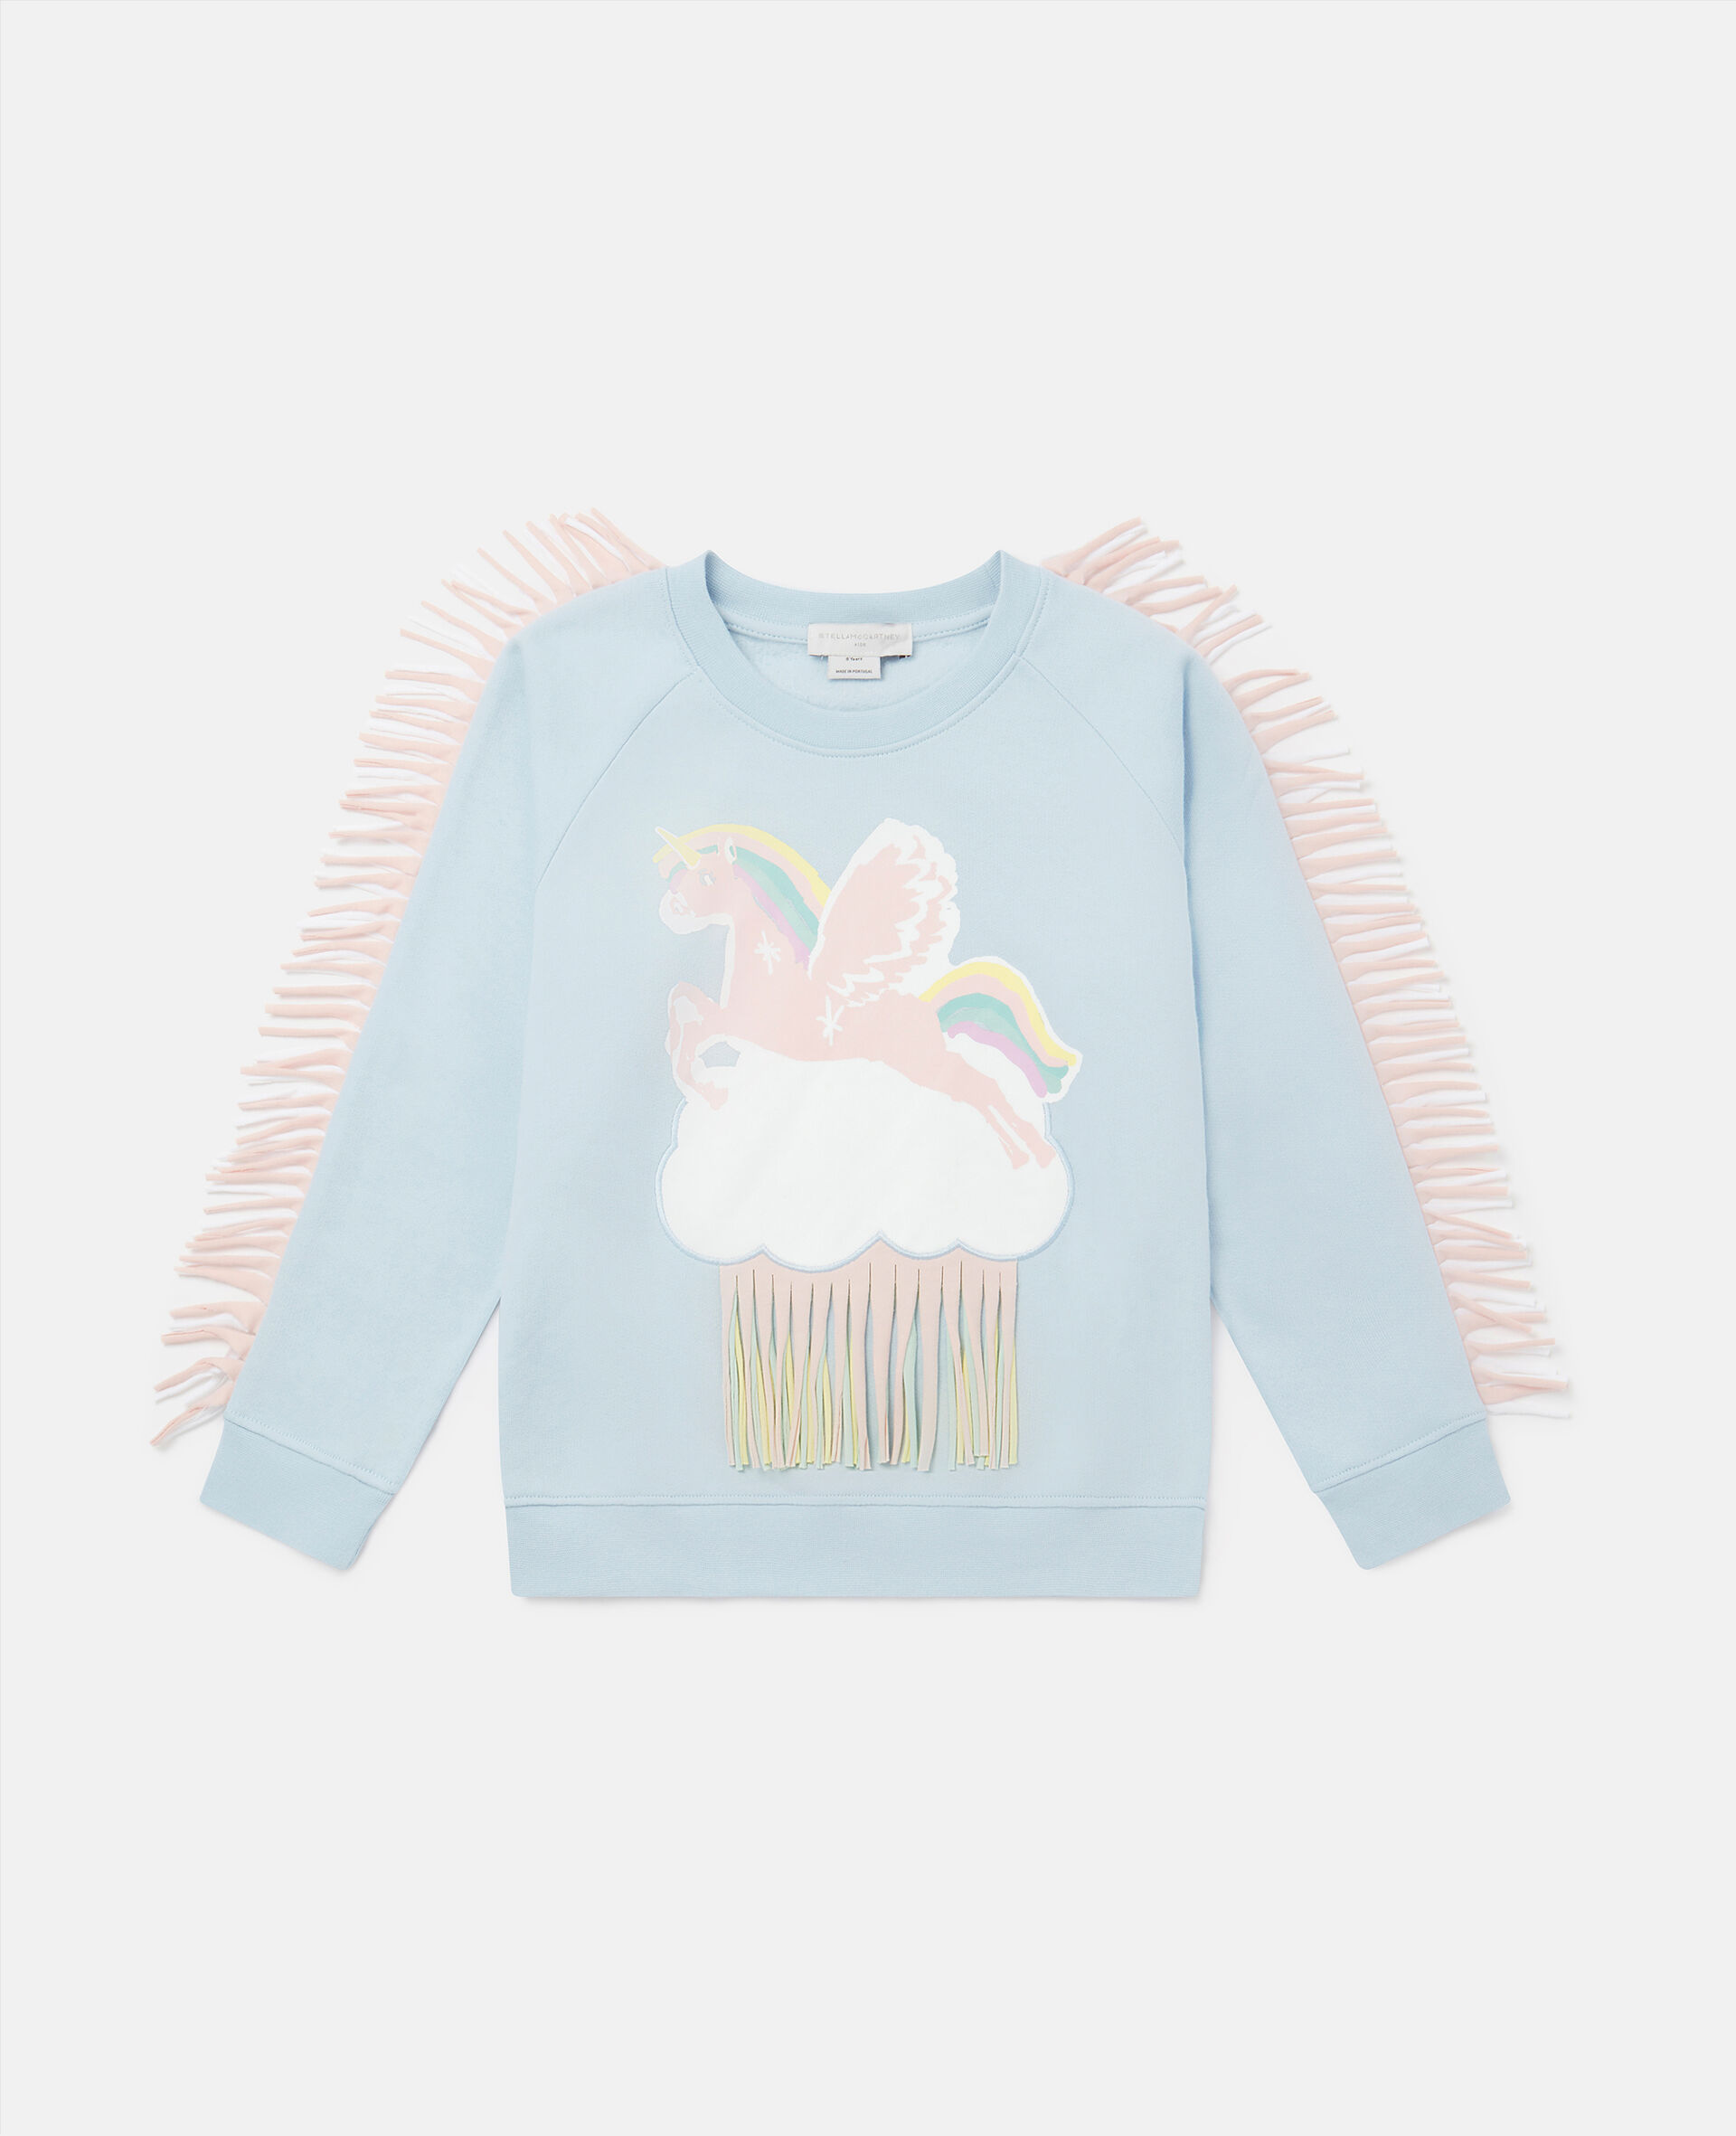 Fringed Unicorn Cloud Sweatshirt-Multicoloured-large image number 0